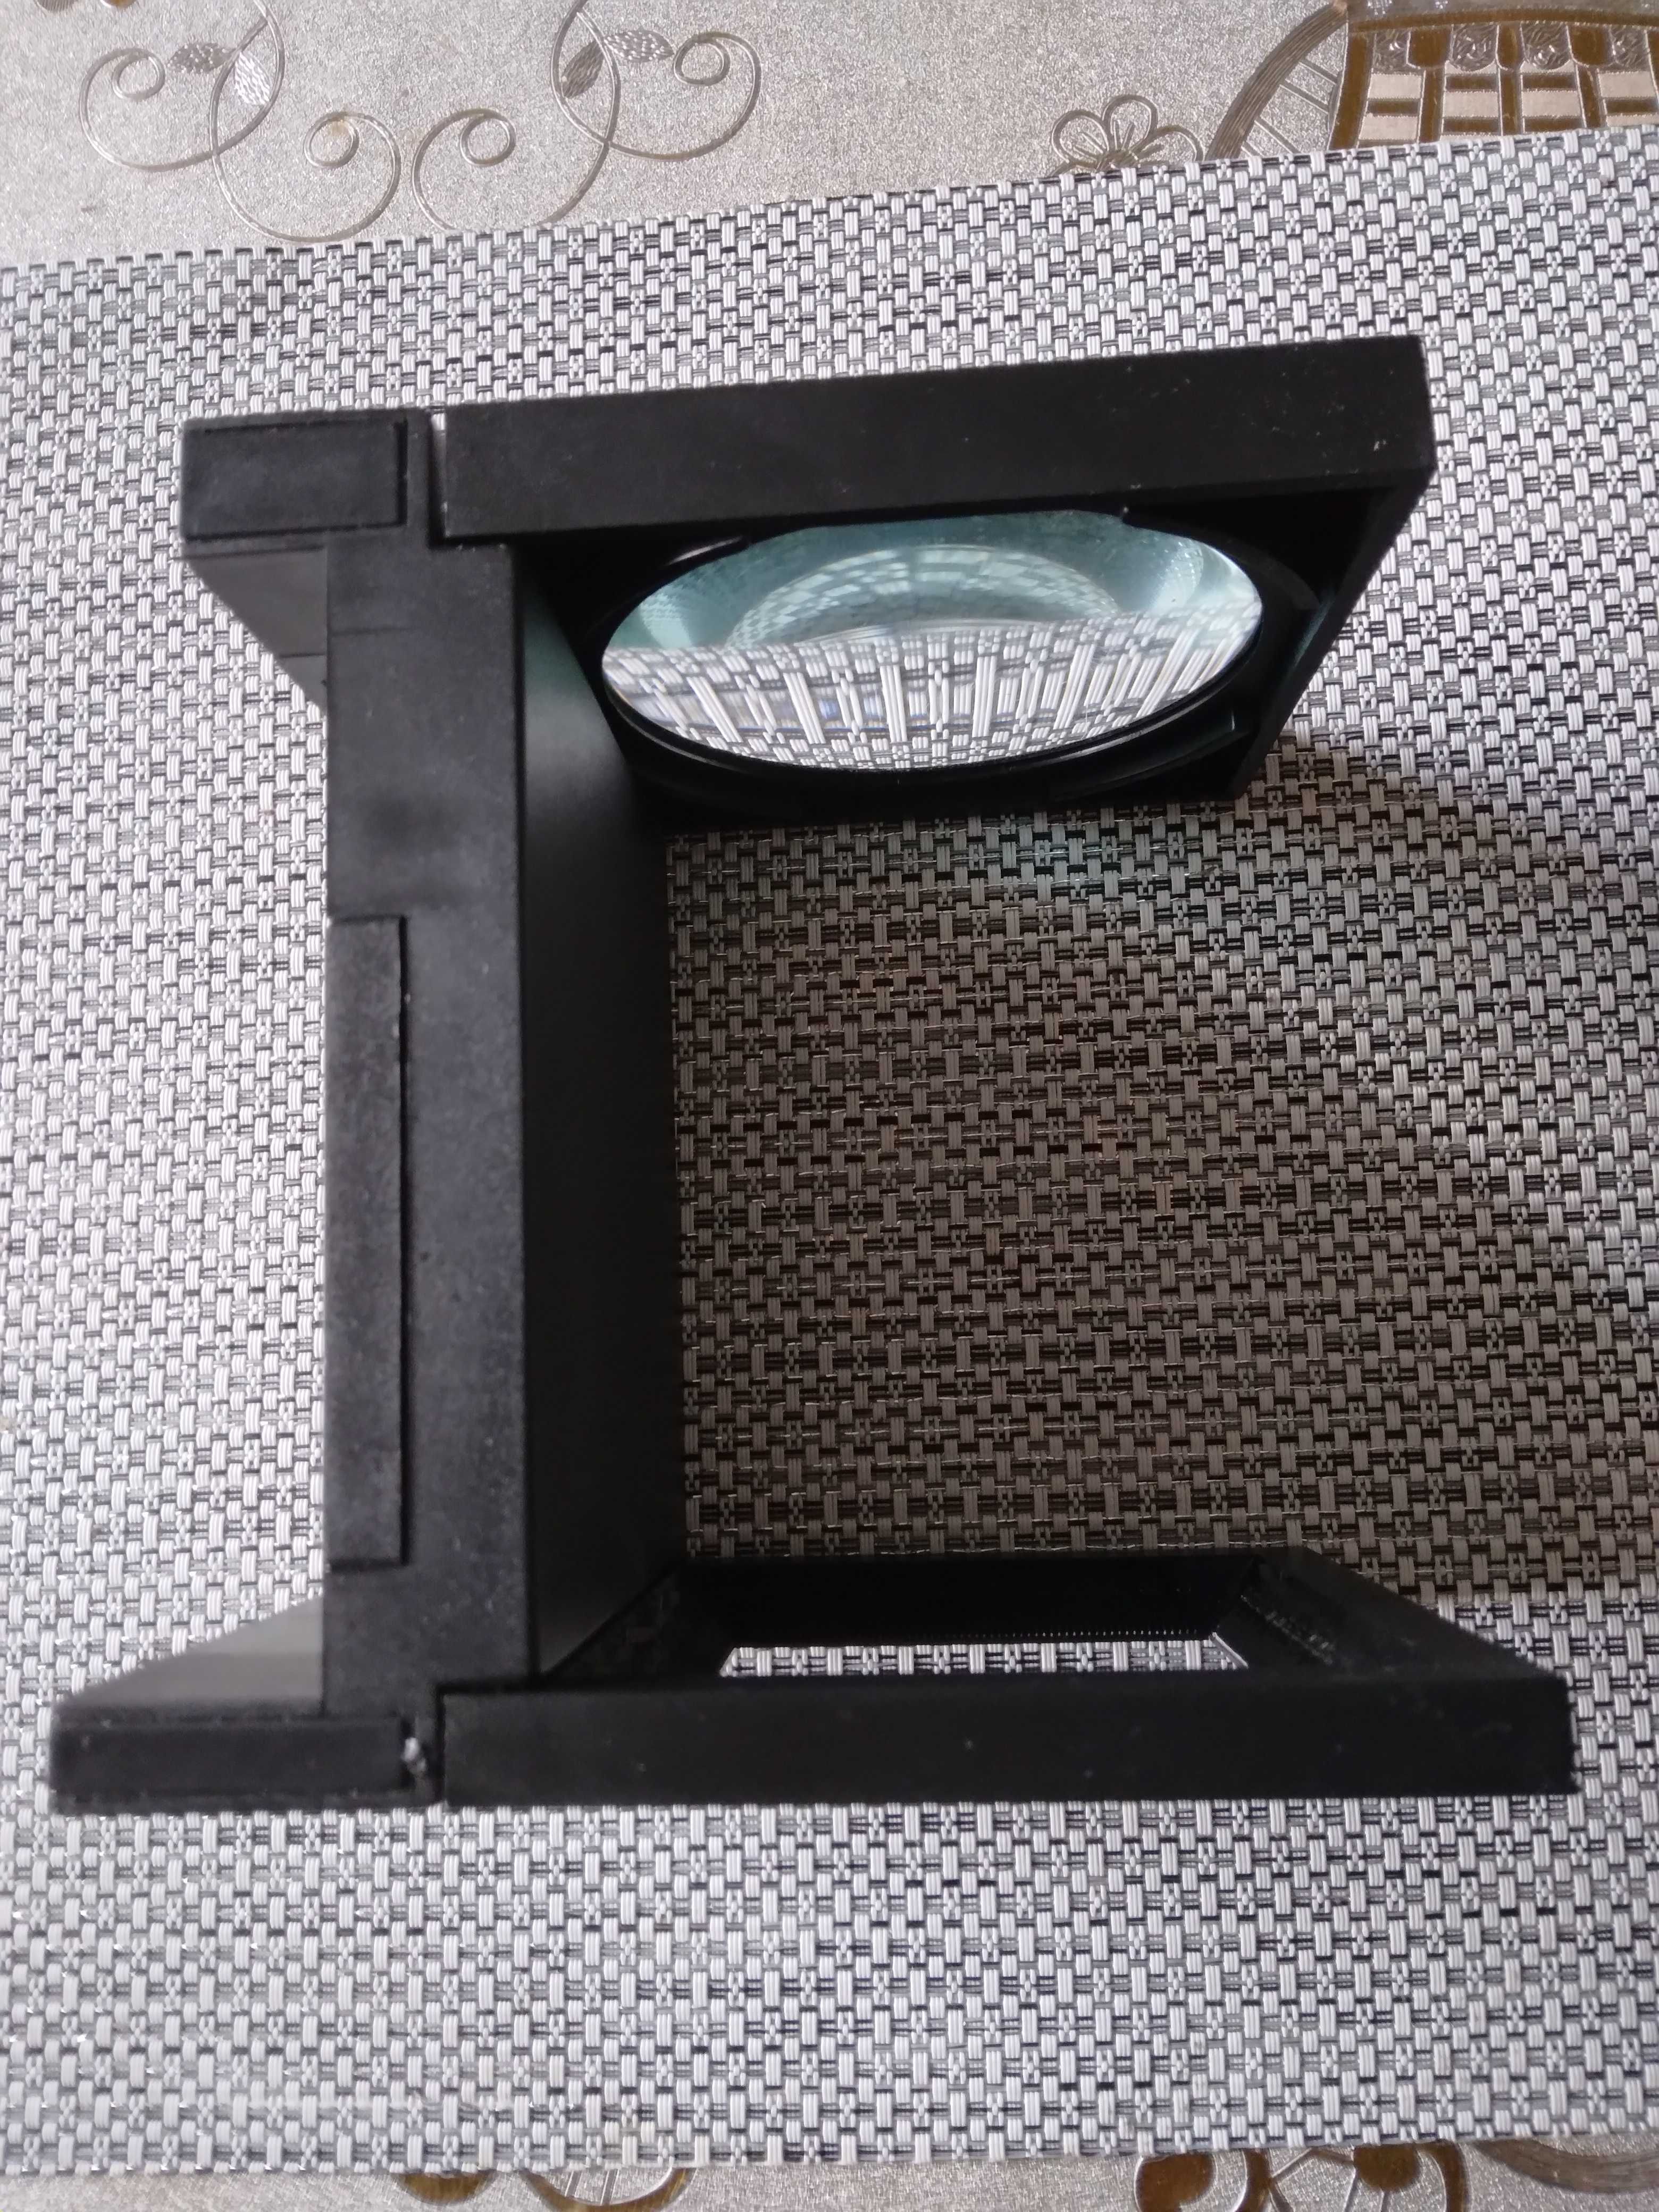 Sprzedam lupę Folding Magnifier with Light